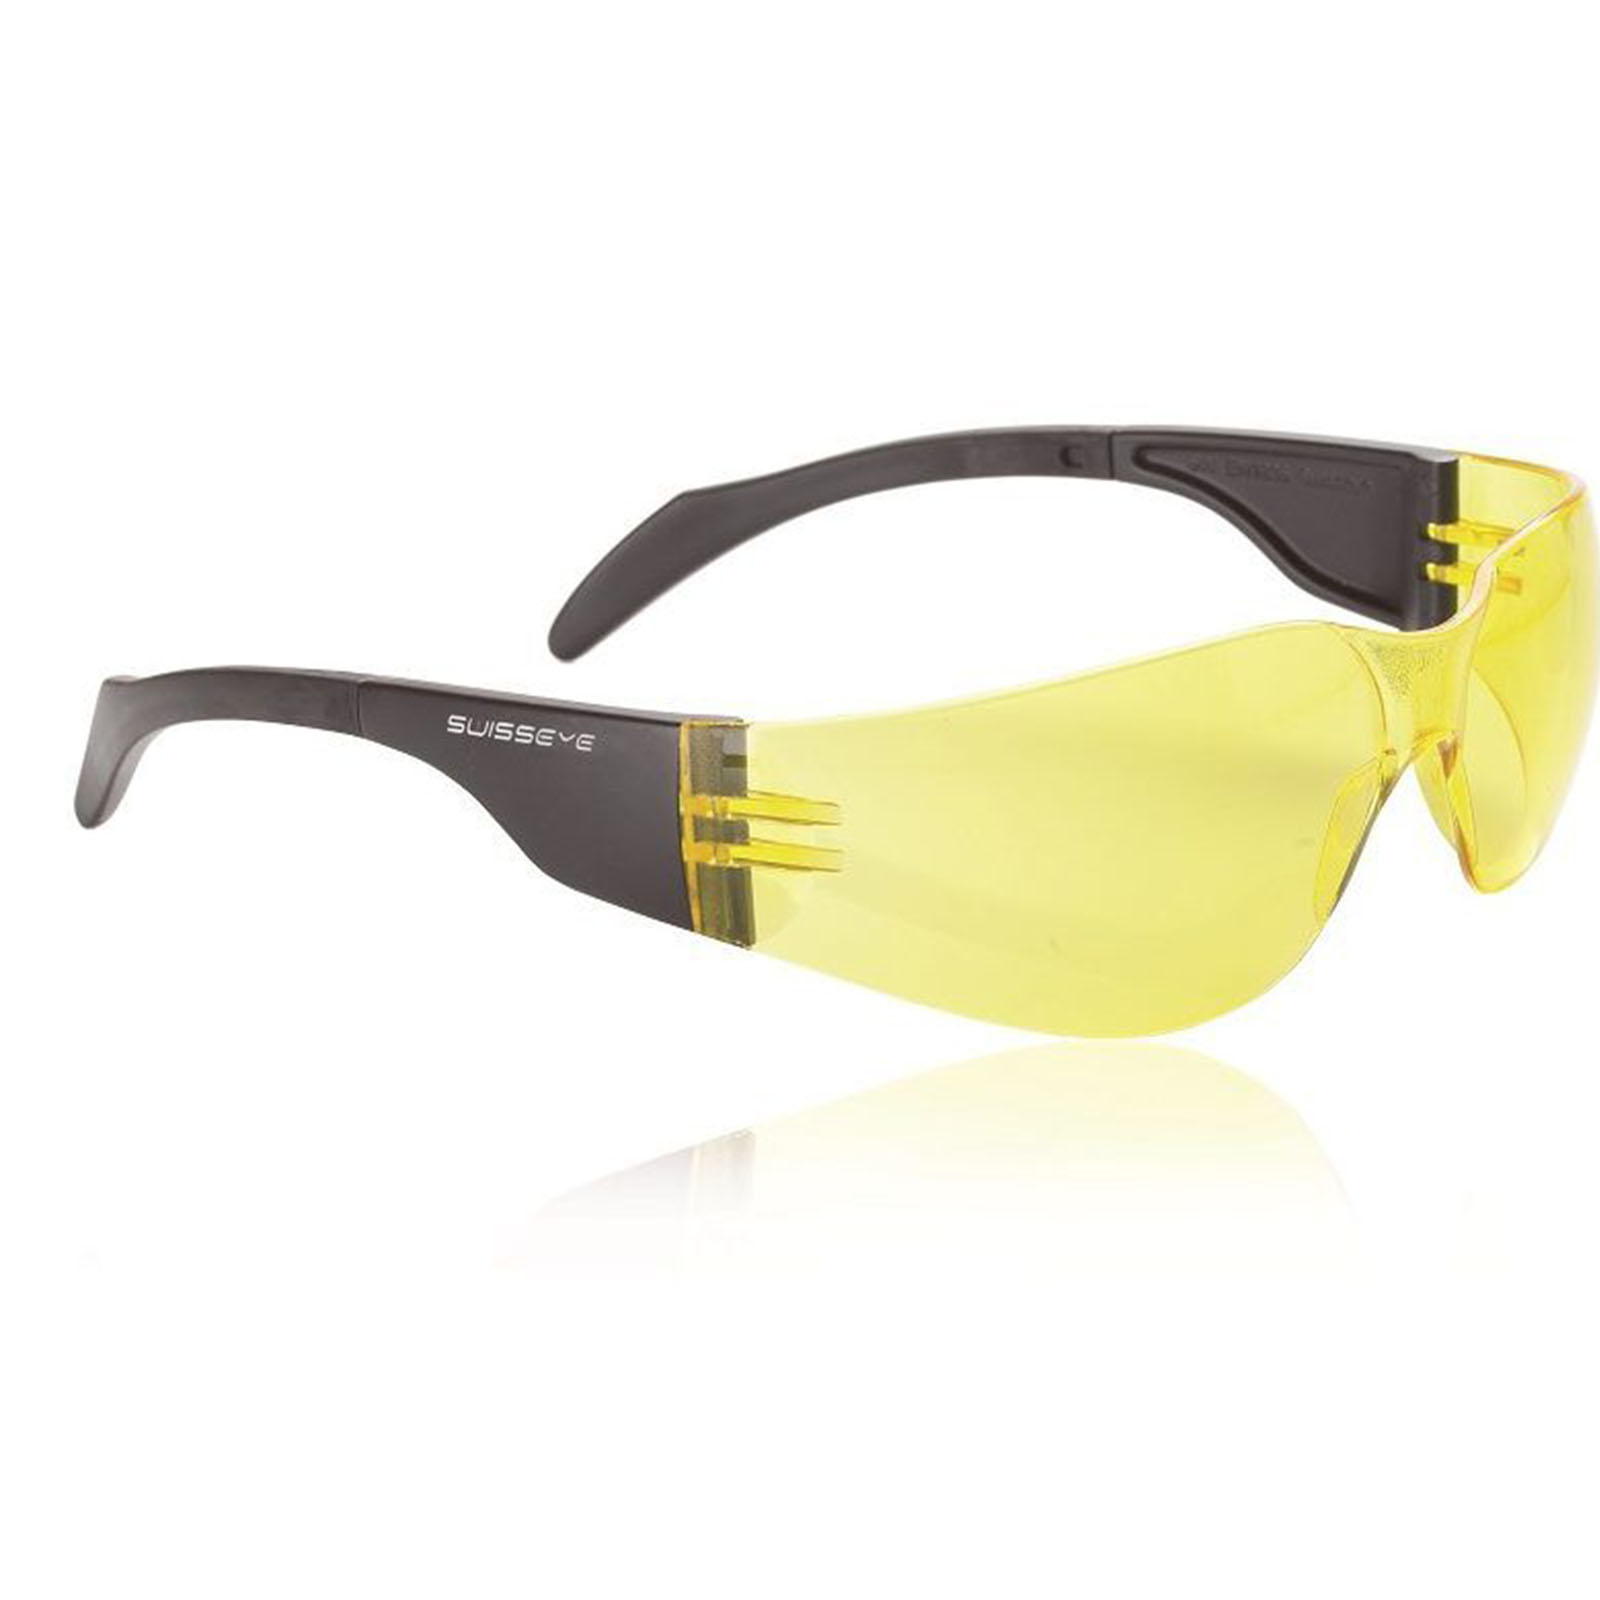 Swisseye Sonnenbrille Outbreak S Rahmen schwarz / Polycarbonatscheiben gelb